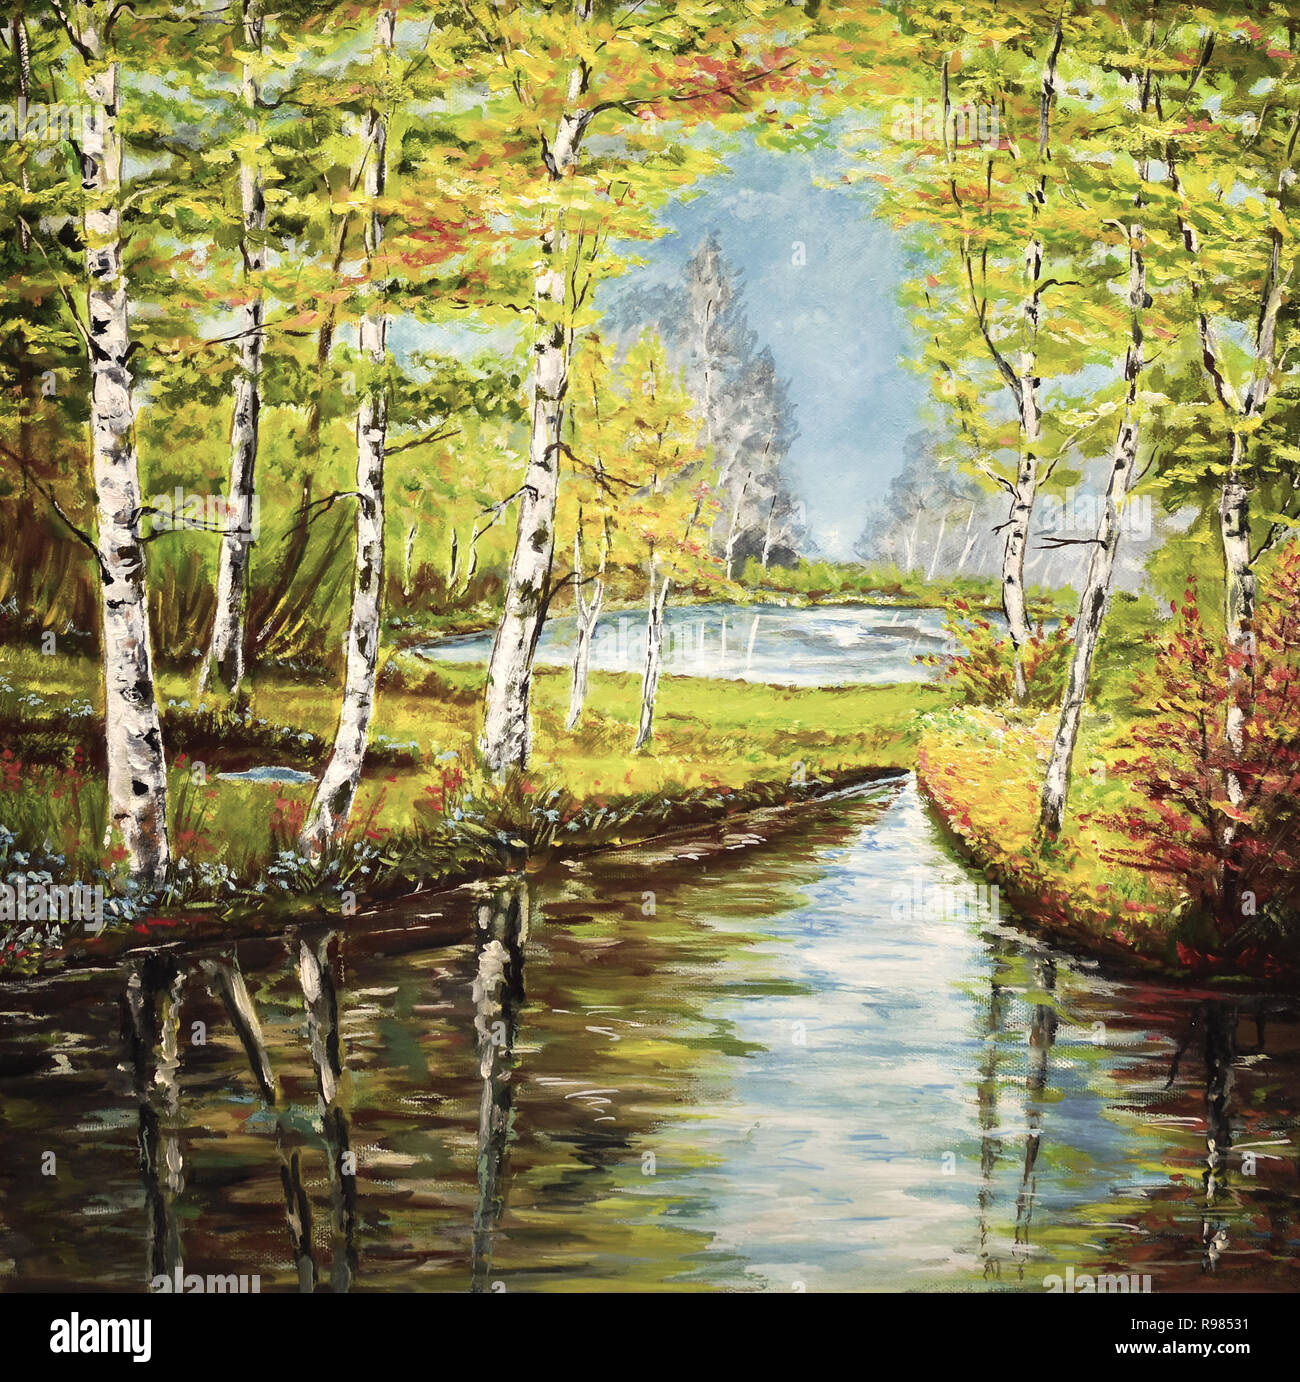 Les bouleaux photo toile huile acrylique soleil nature automne forêt de feuillus Banque D'Images